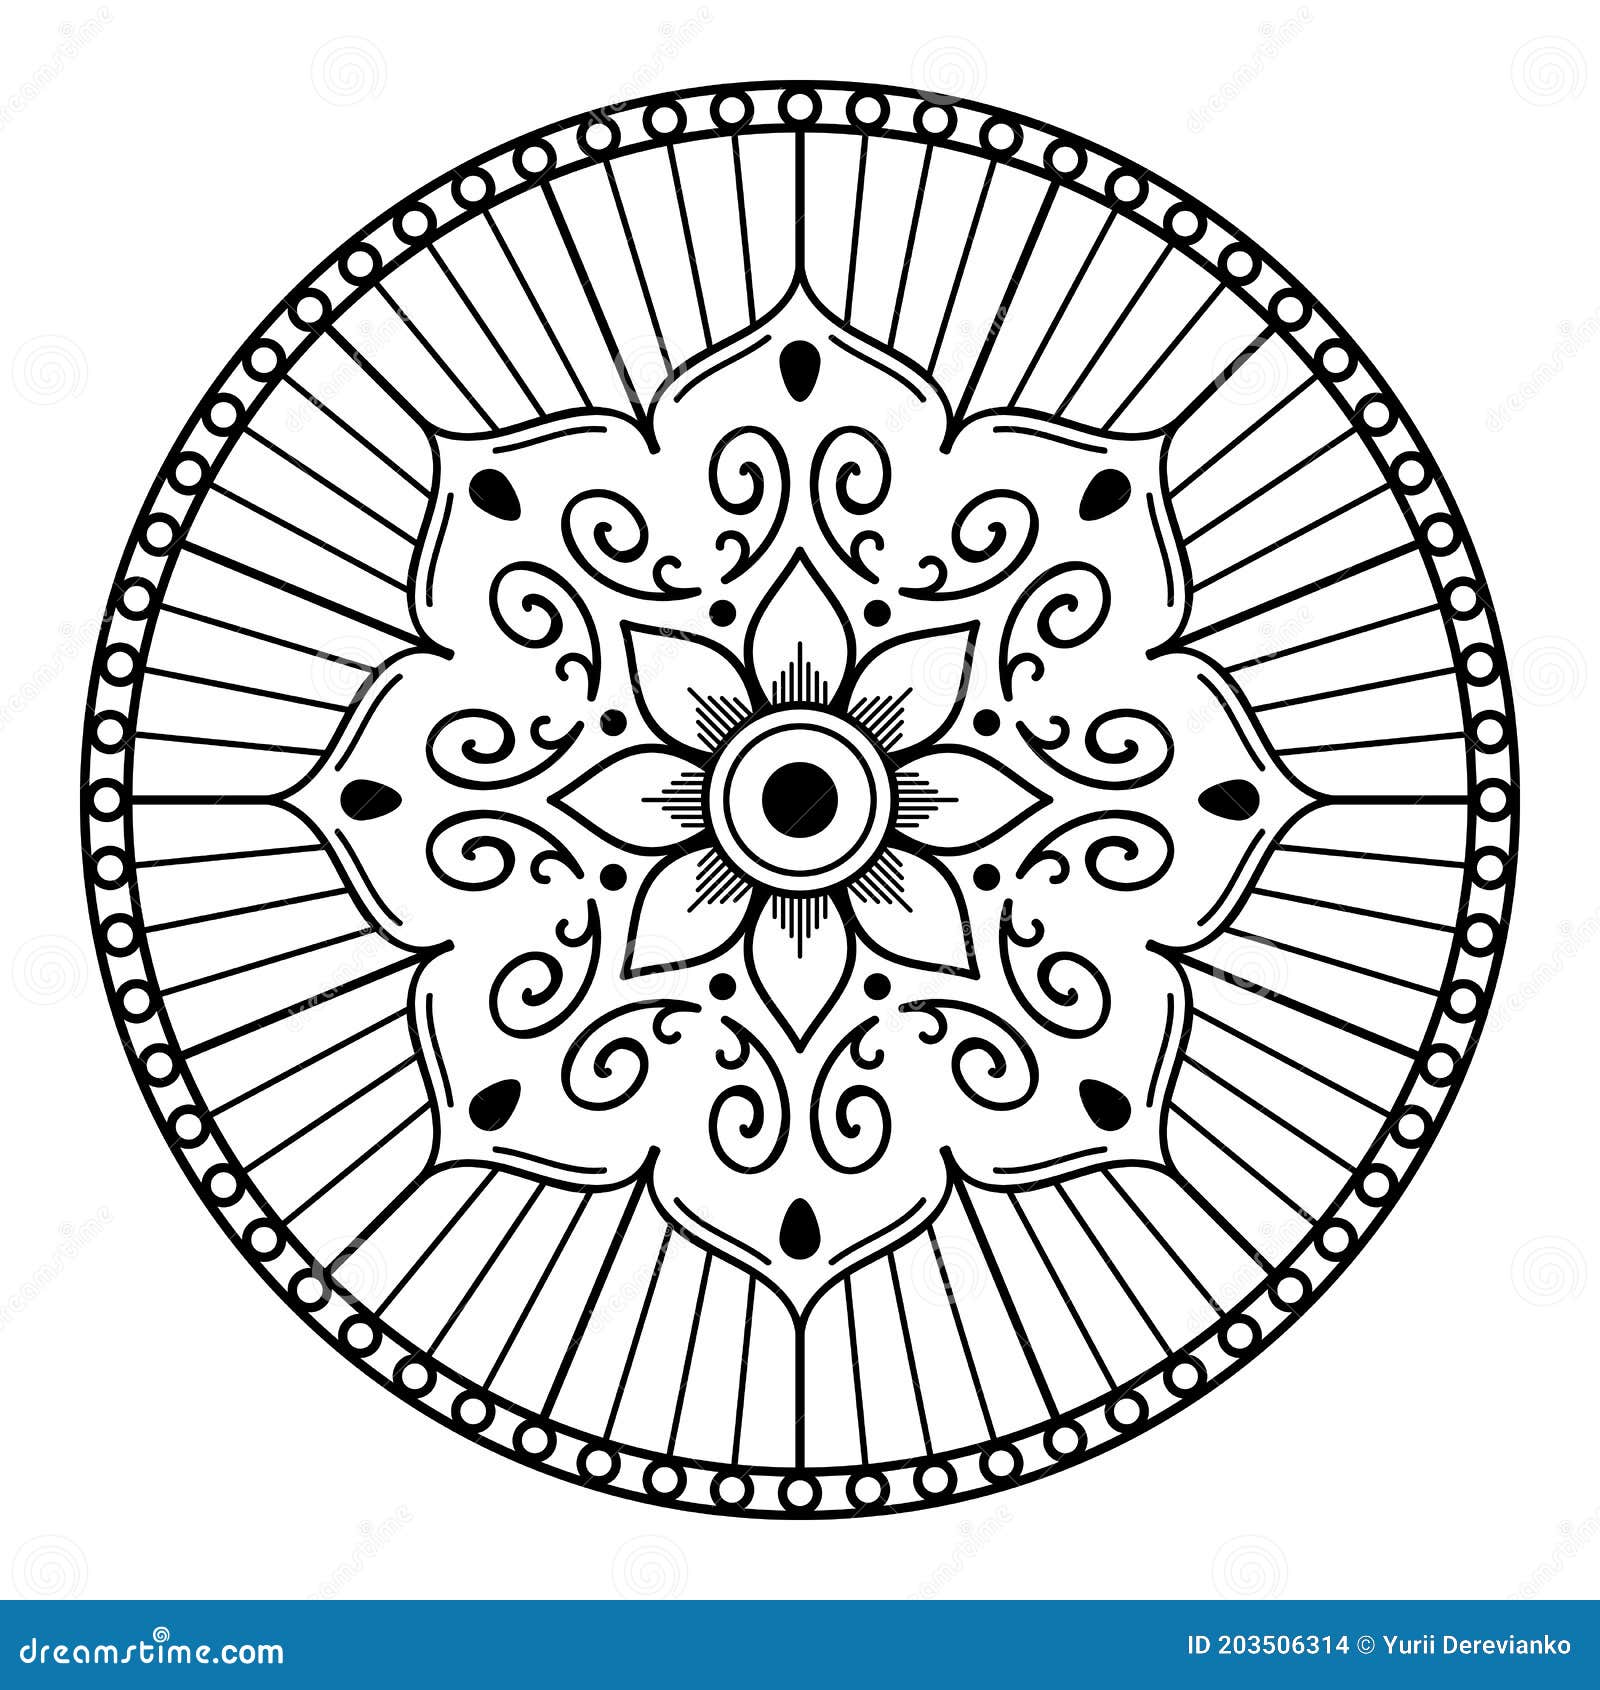 黑白曼陀罗图案库存例证 插画包括有成人 查出 装饰 案件 印第安语 看板卡 图标 坛场 203506314